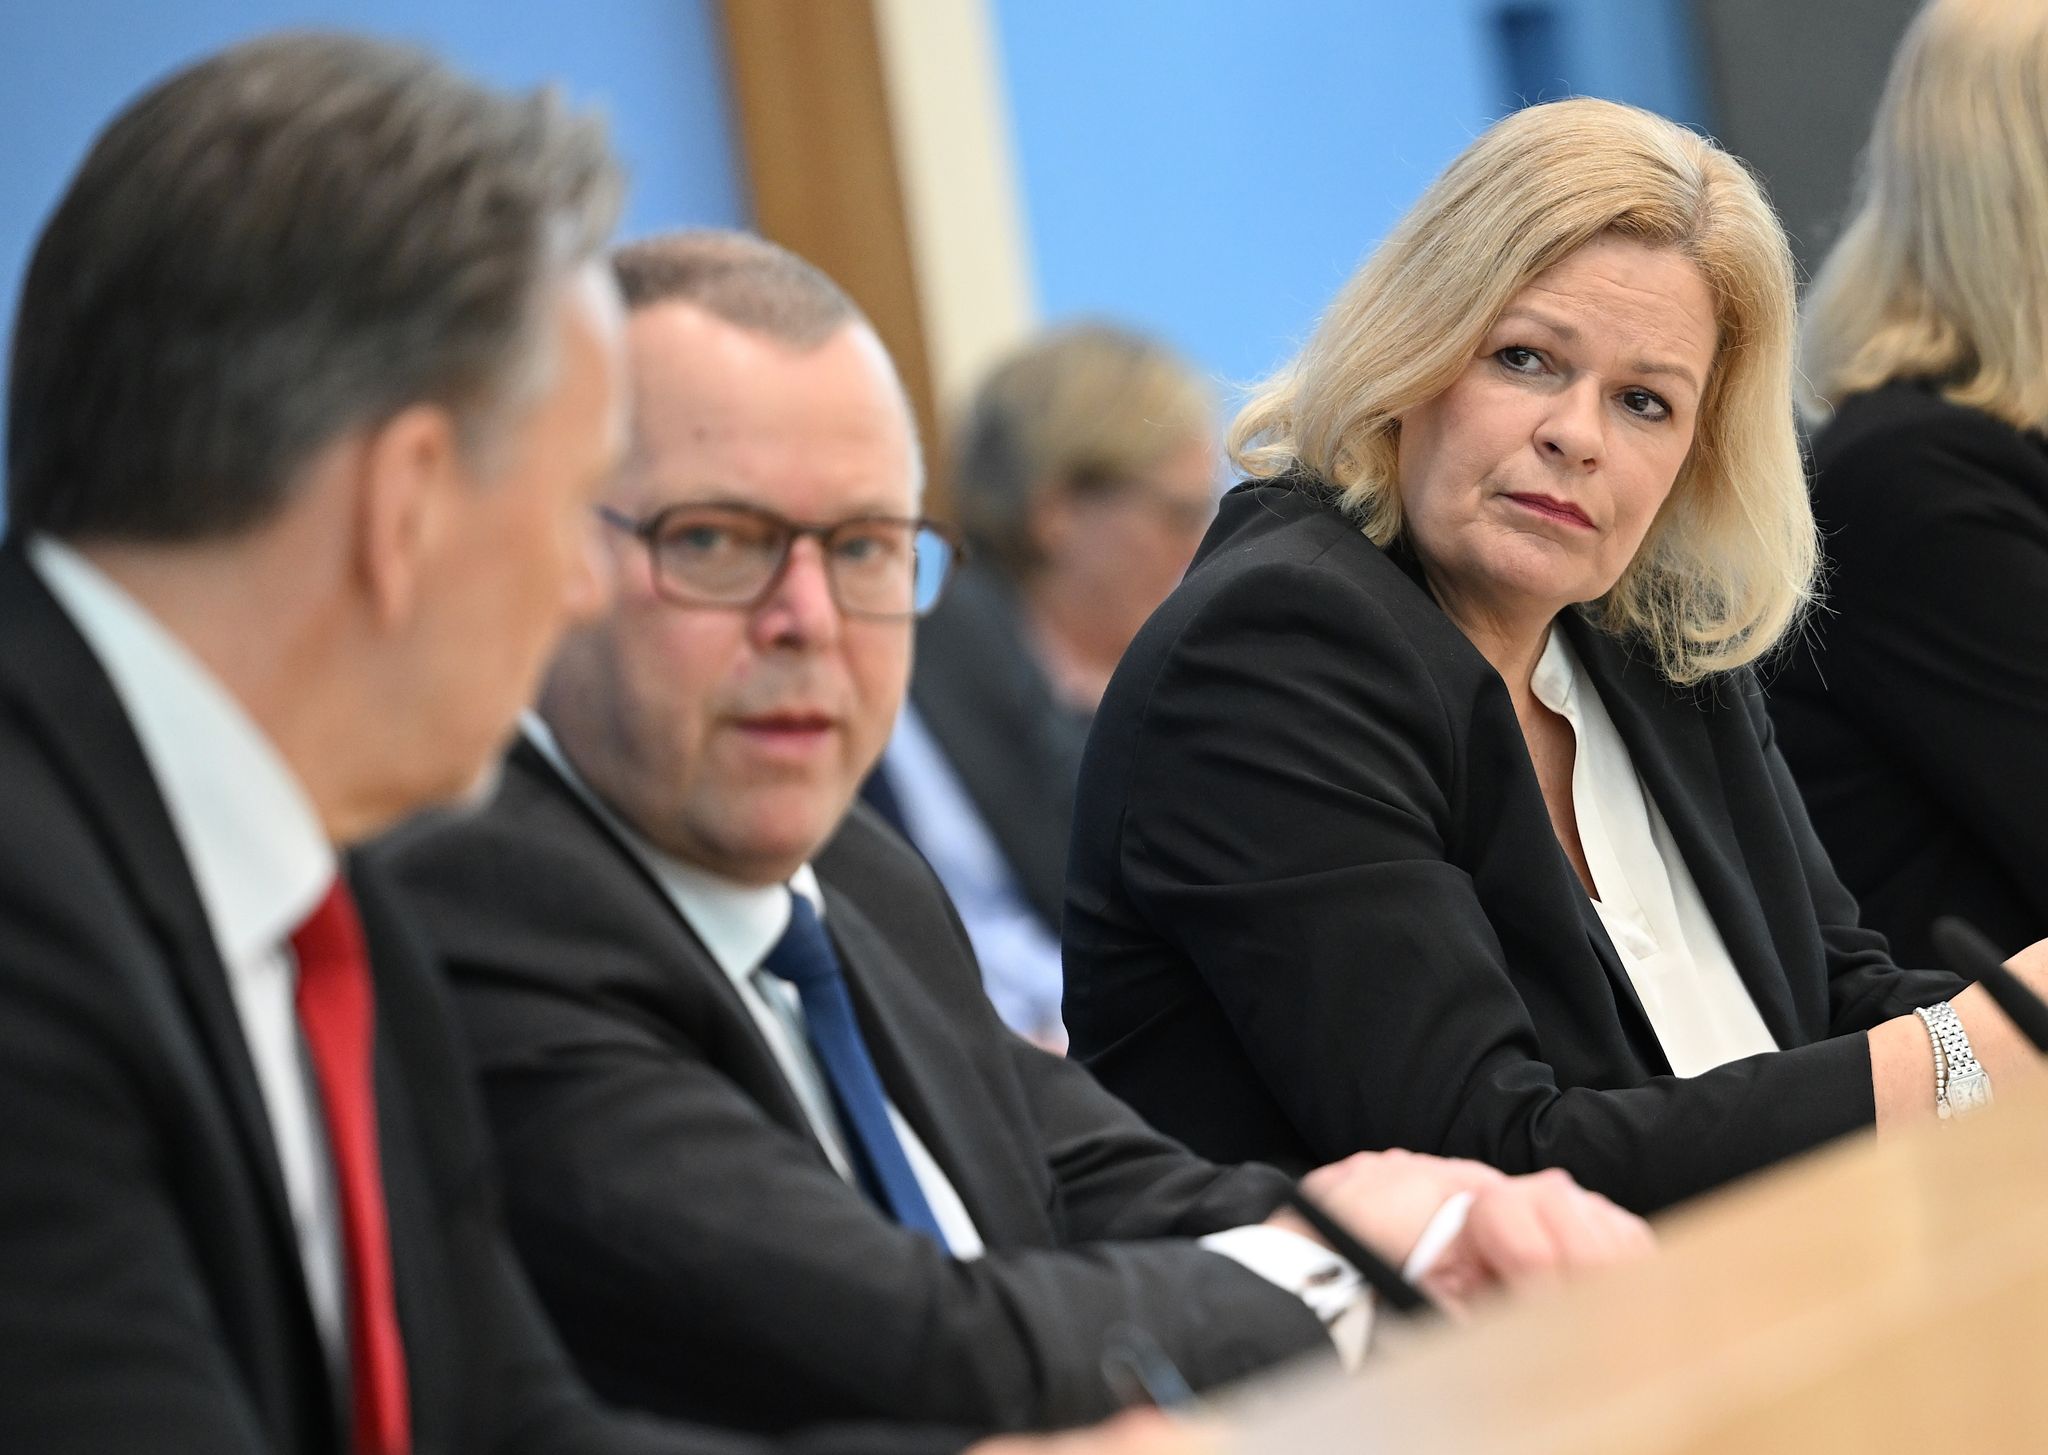 Innenminister beraten nach Angriff in Dresden über besseren Schutz